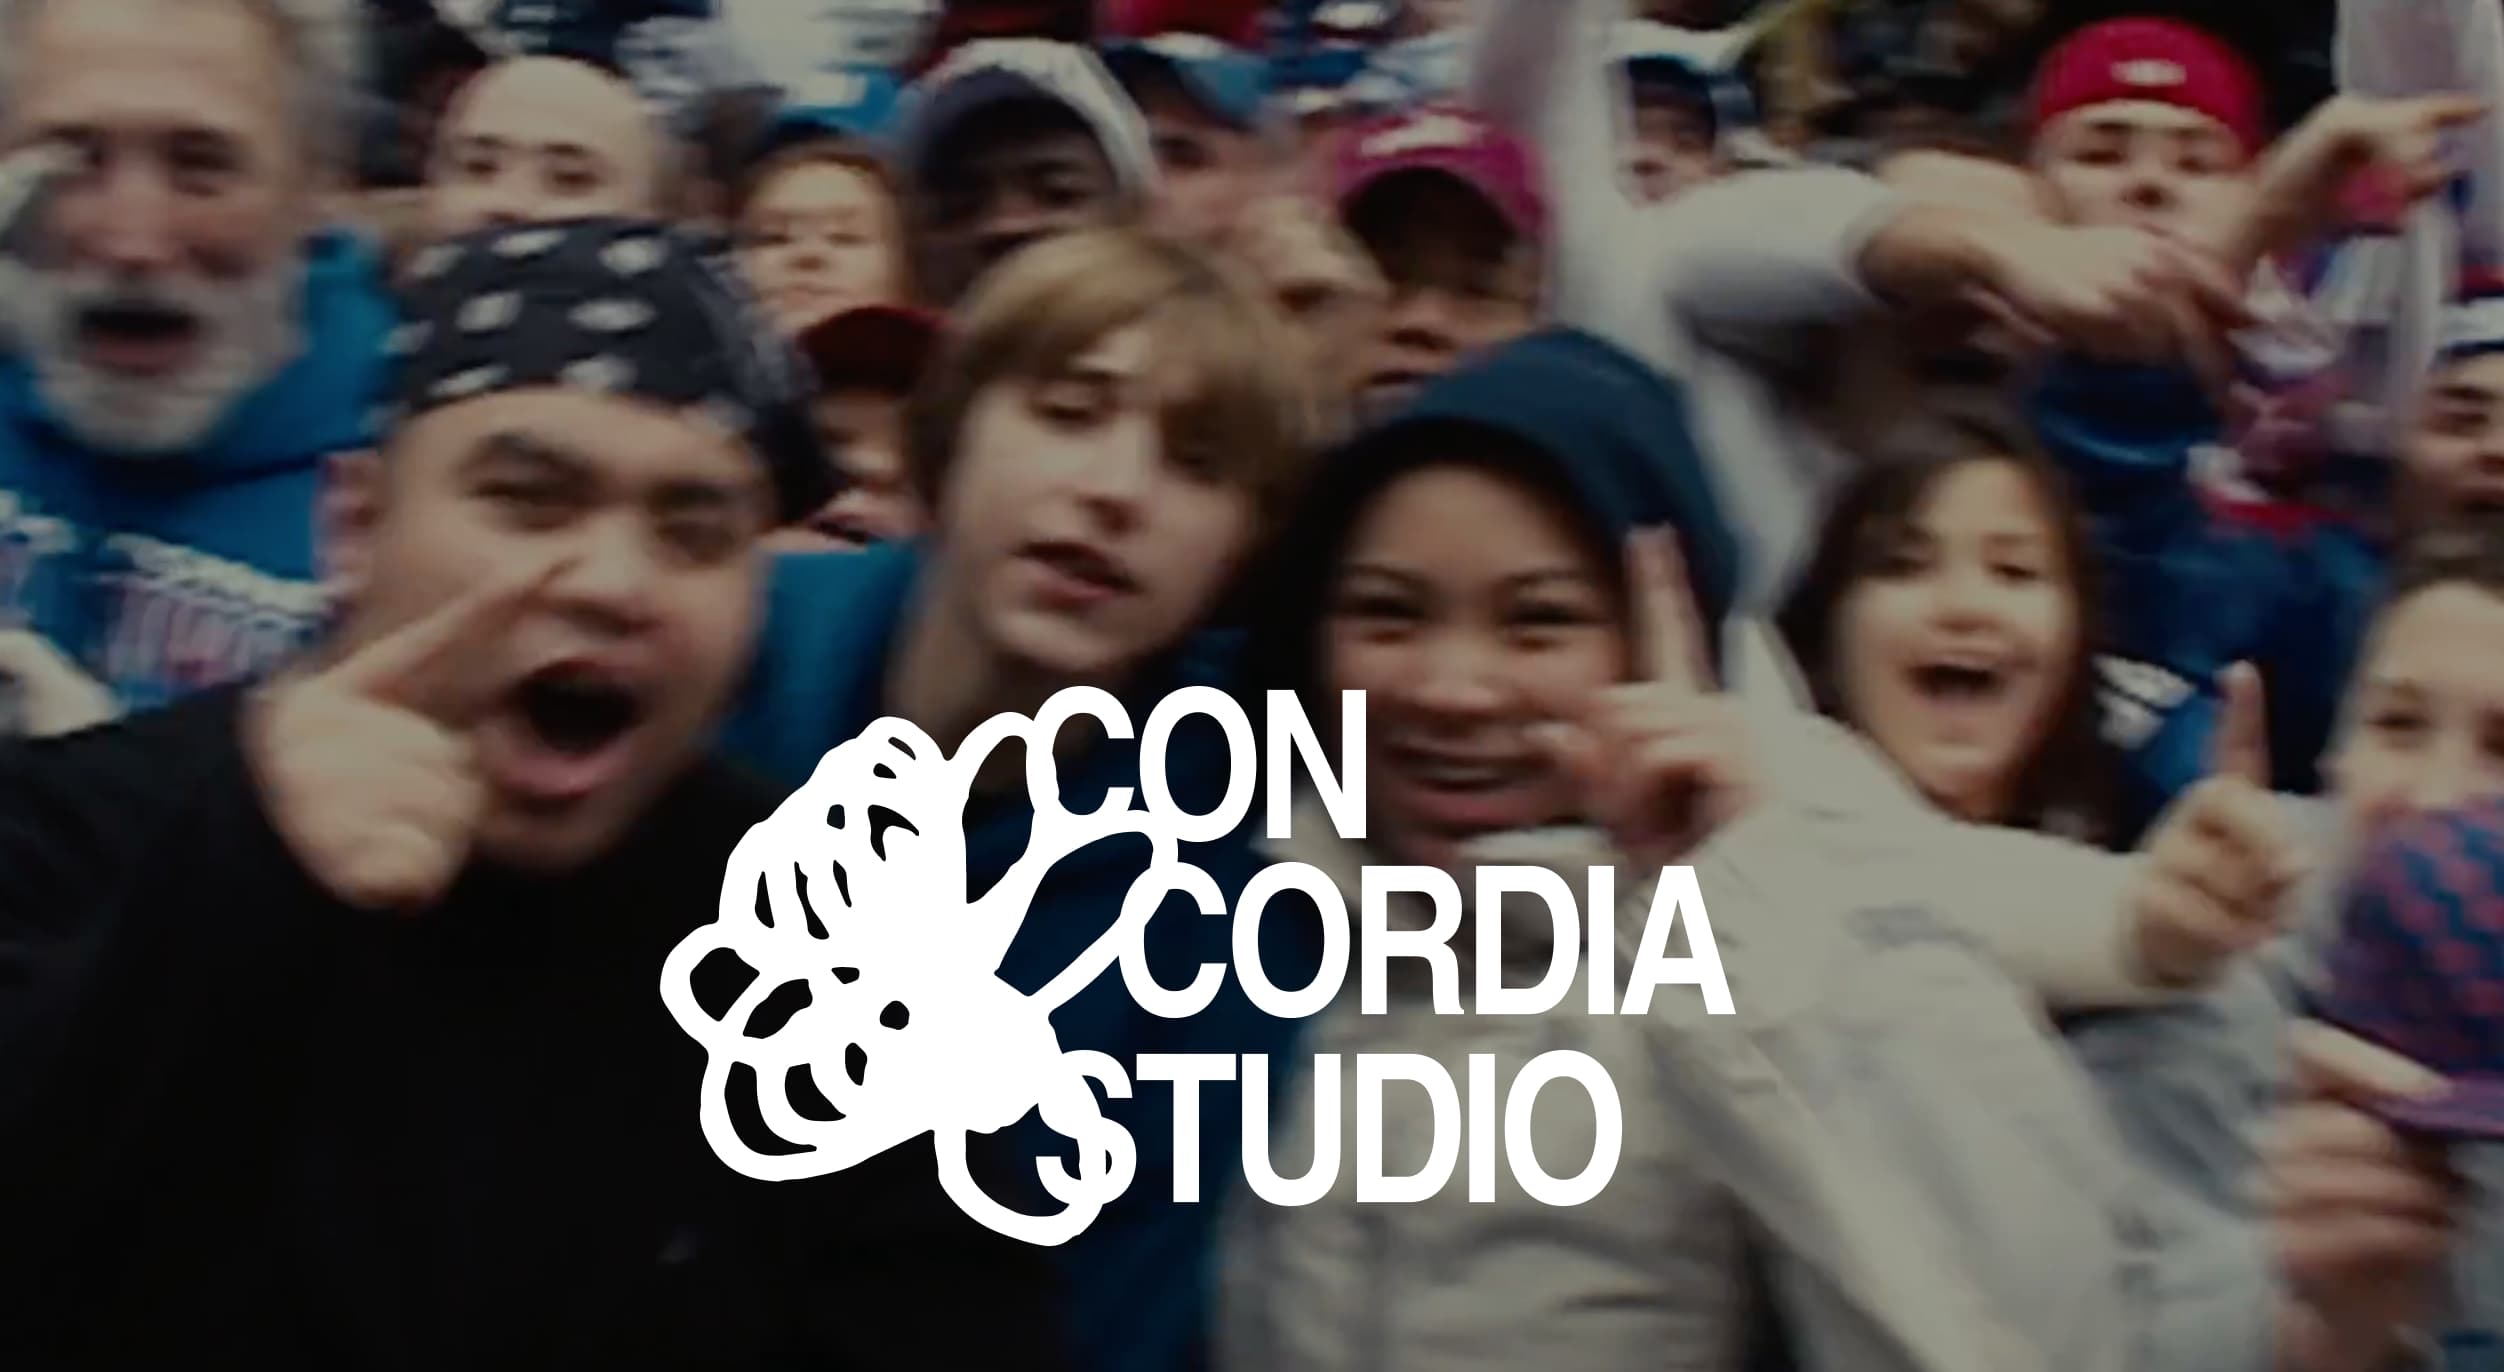 Concordia Studio logotype overlay